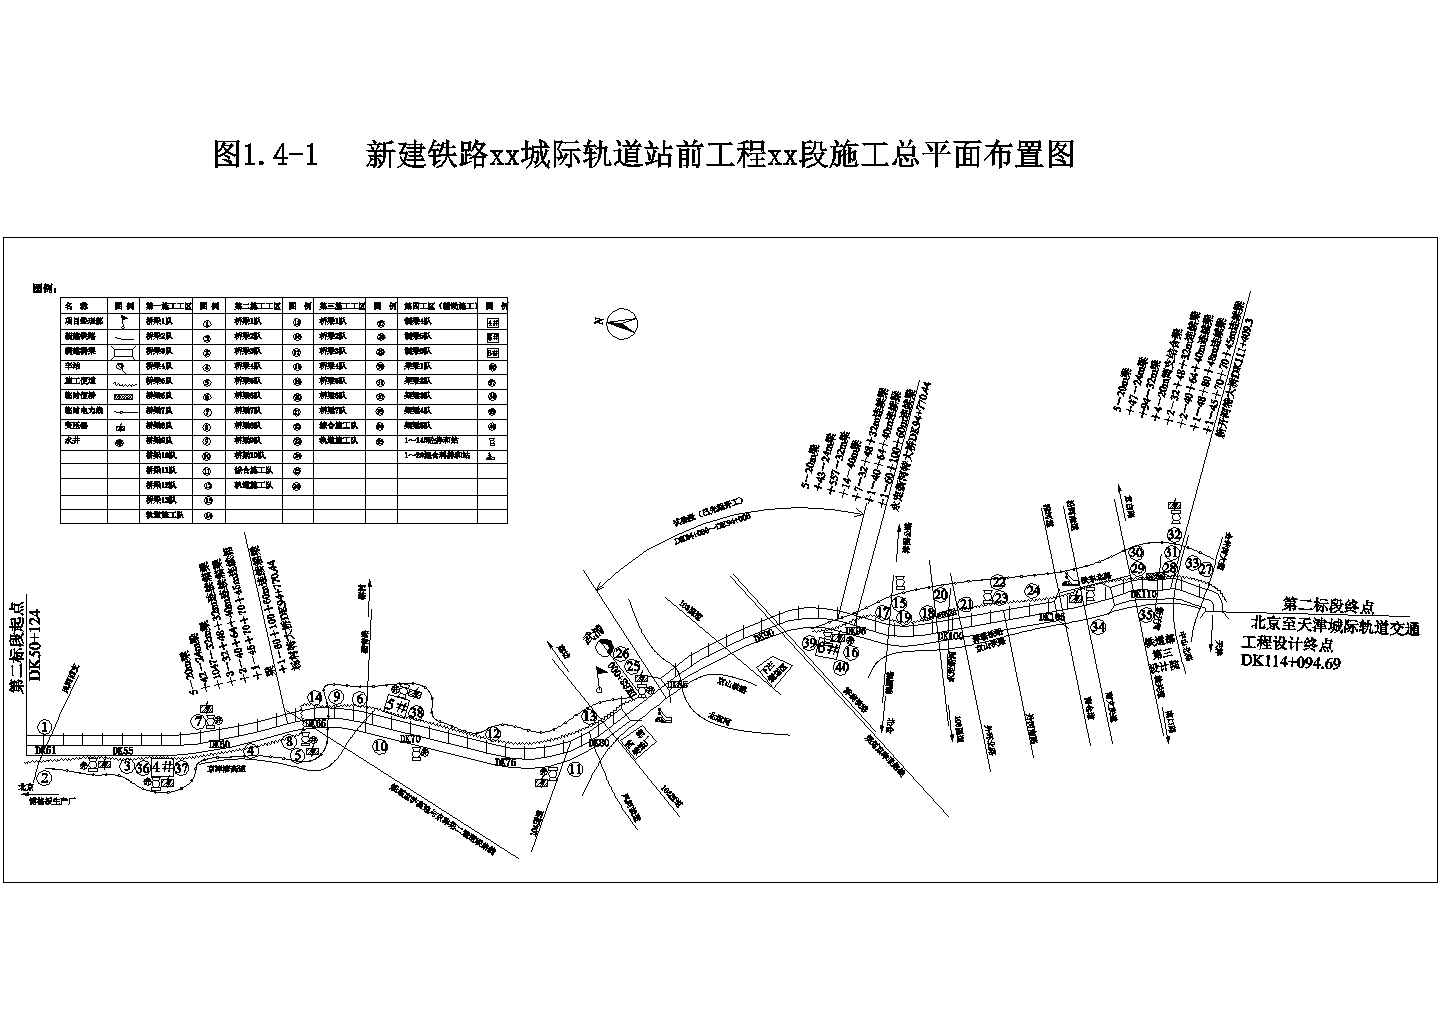 京津城际轨道某段工程施工组织设计